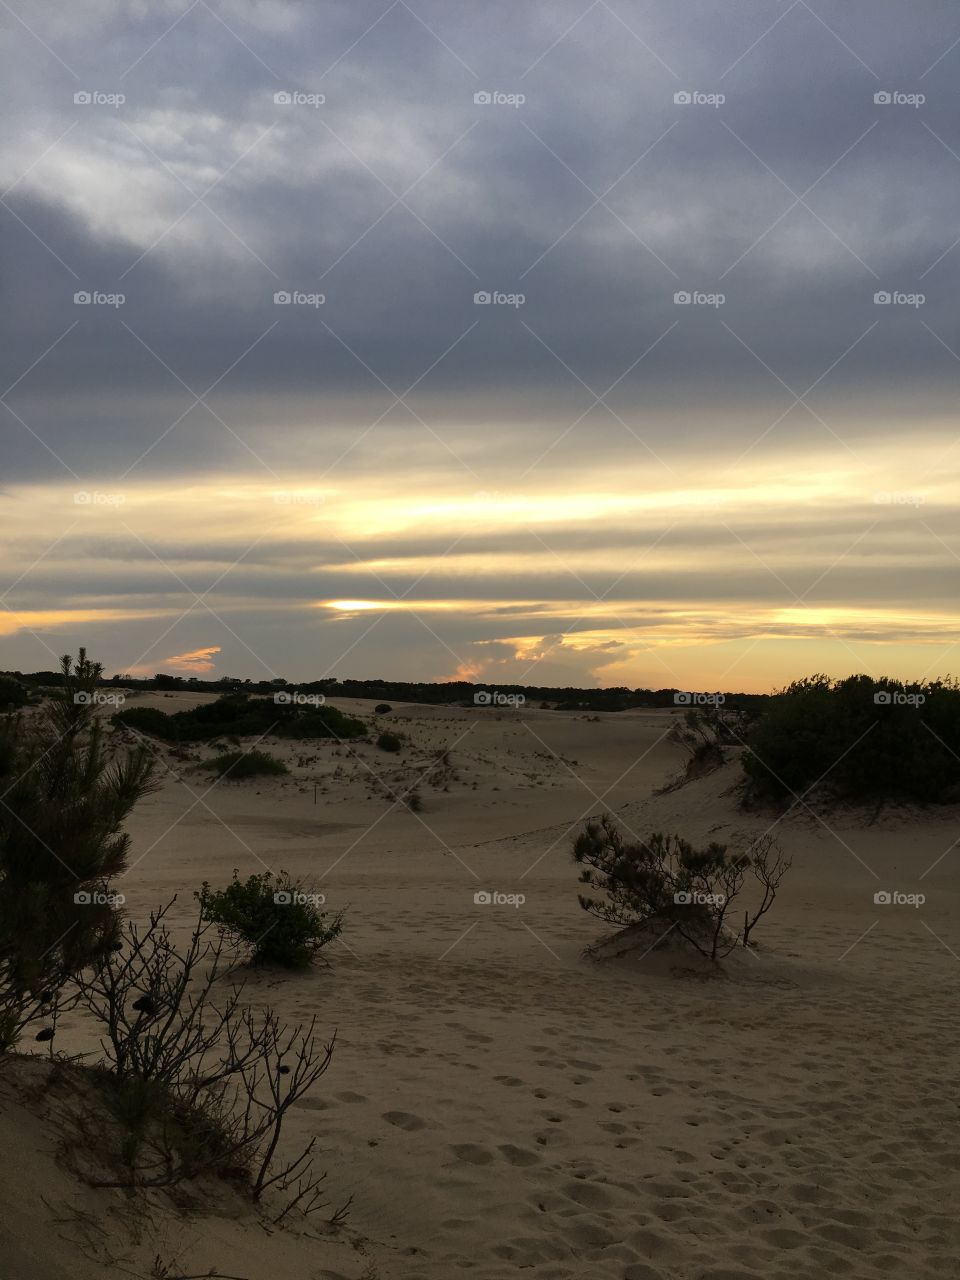 Sunset on sand dunes